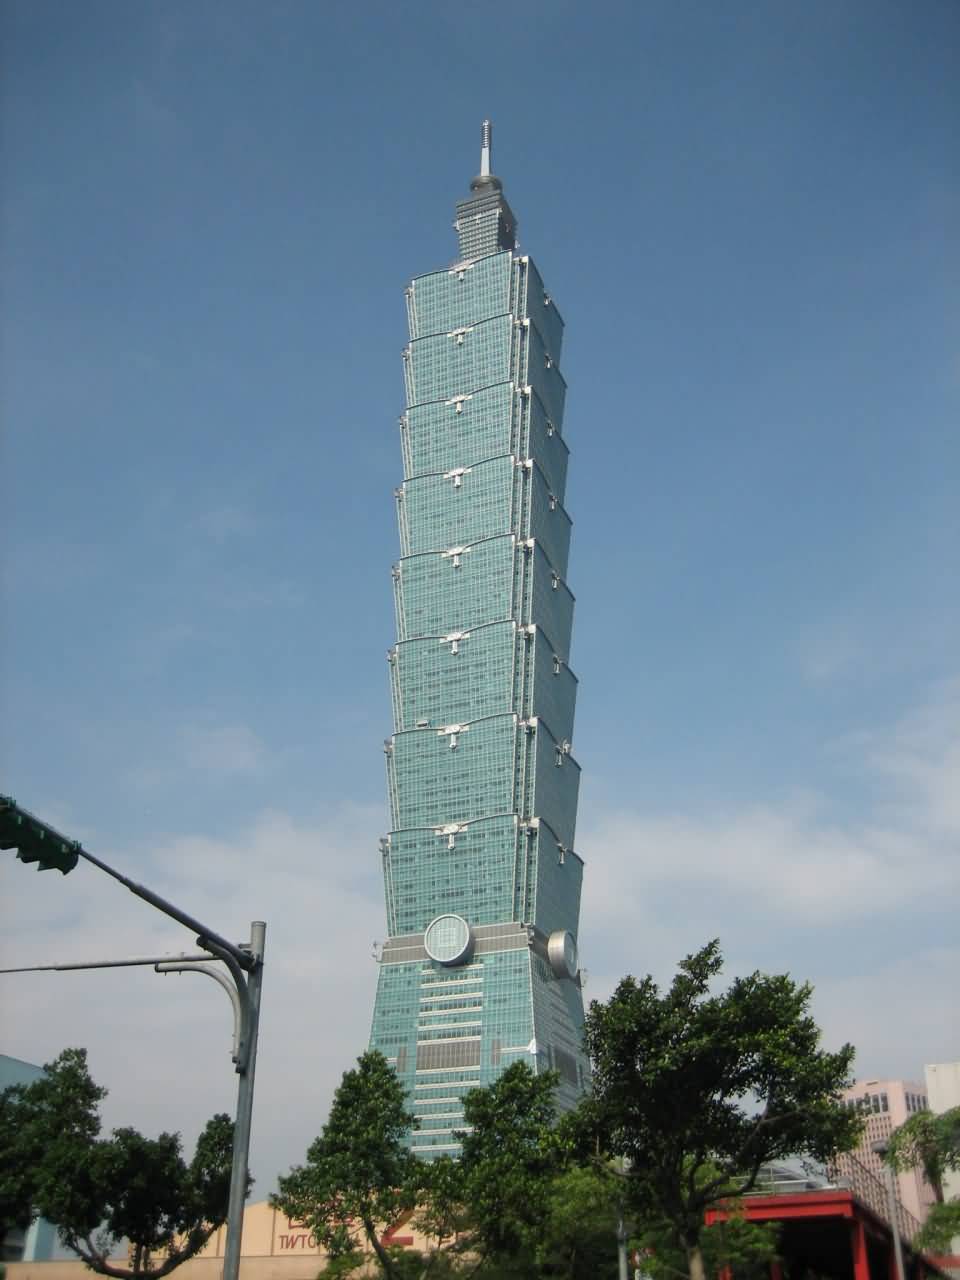 The Taipei 101 Beautiful Skyscraper Of Taiwan